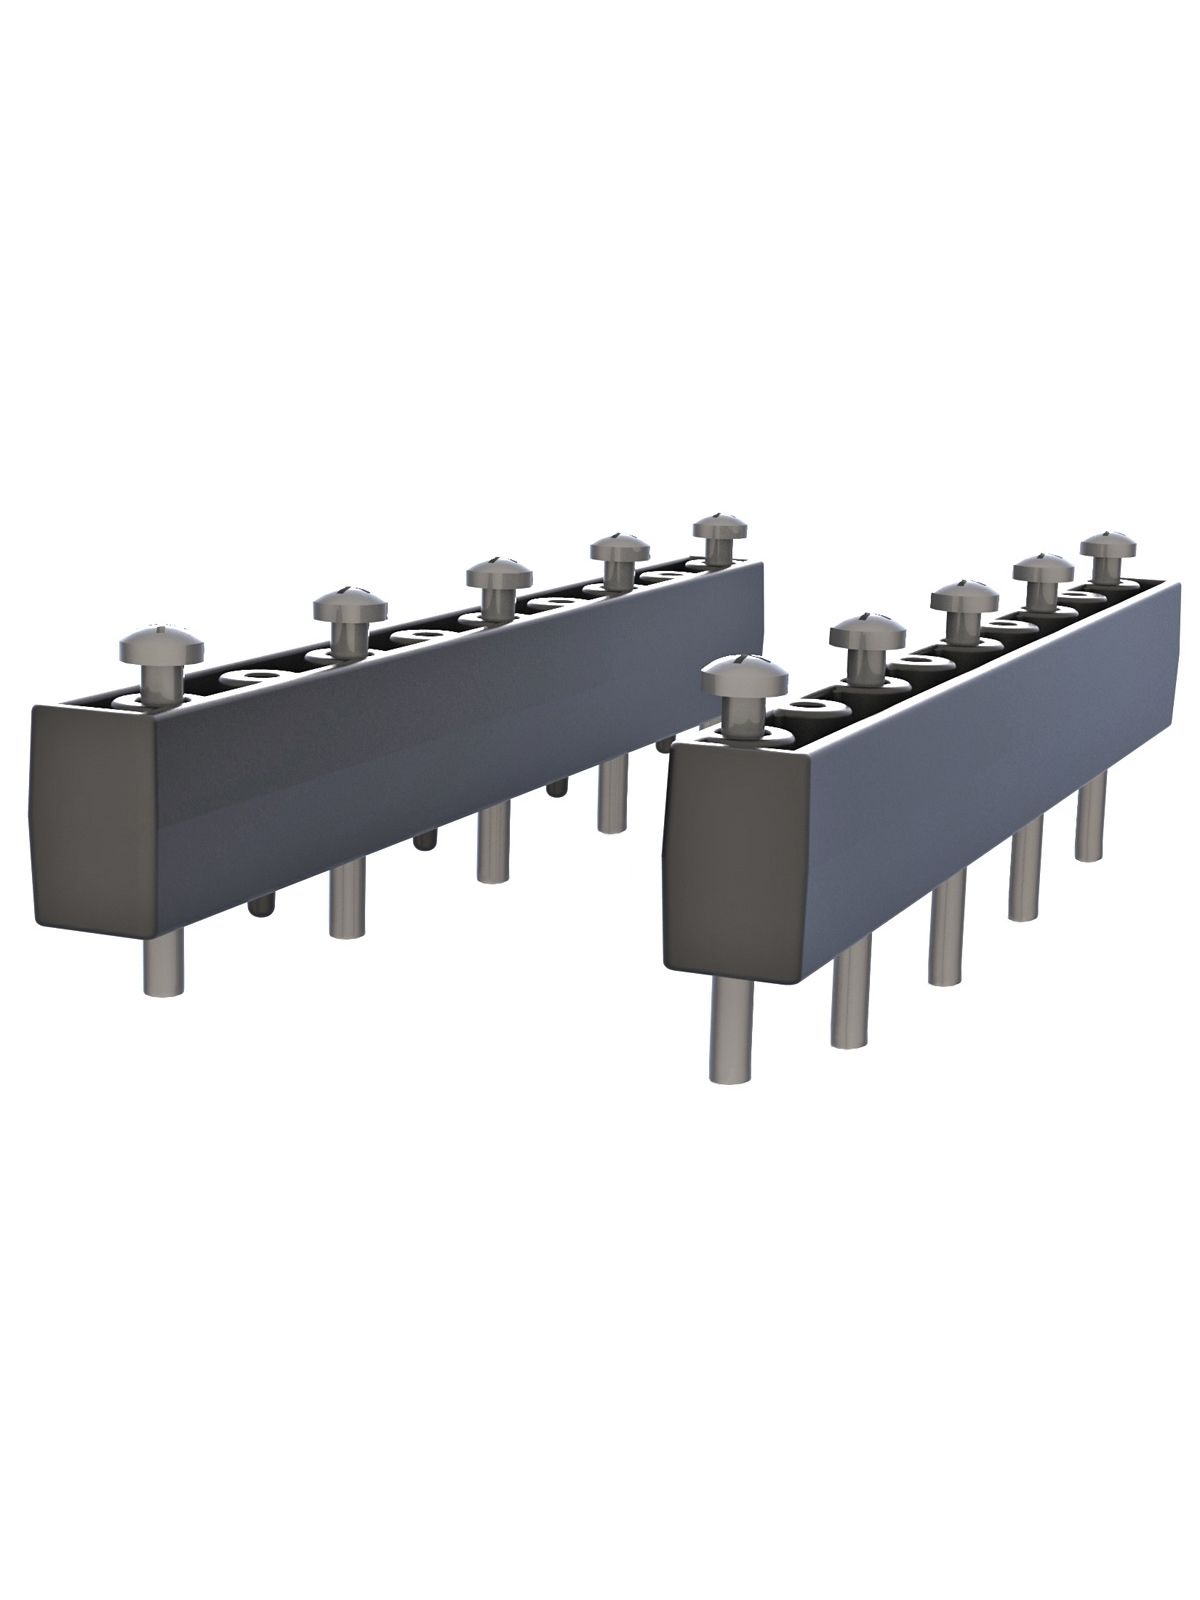 RAM Mounts Abstandshalter für Tab-Tite, Tab-Lock und GDS Halteschalen - 2 Stück